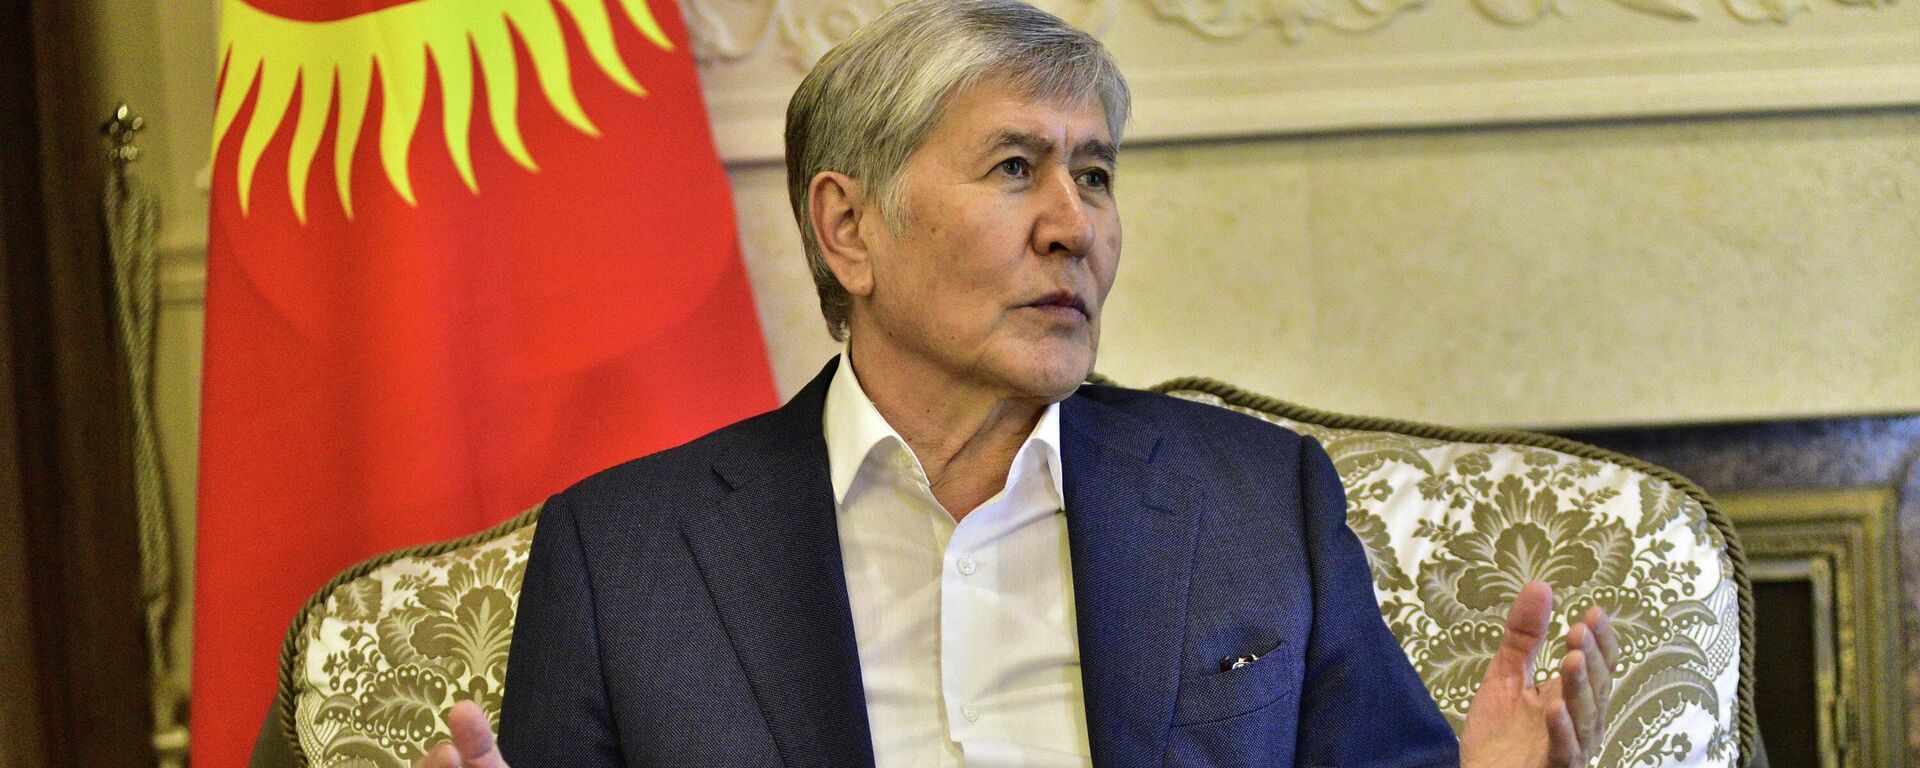 Бывший президент Кыргызстана Алмазбек Атамбаев в своем доме в селе Кой-Тай после освобождения от заключения. 14 февраля 2023 года - Sputnik Кыргызстан, 1920, 14.02.2023